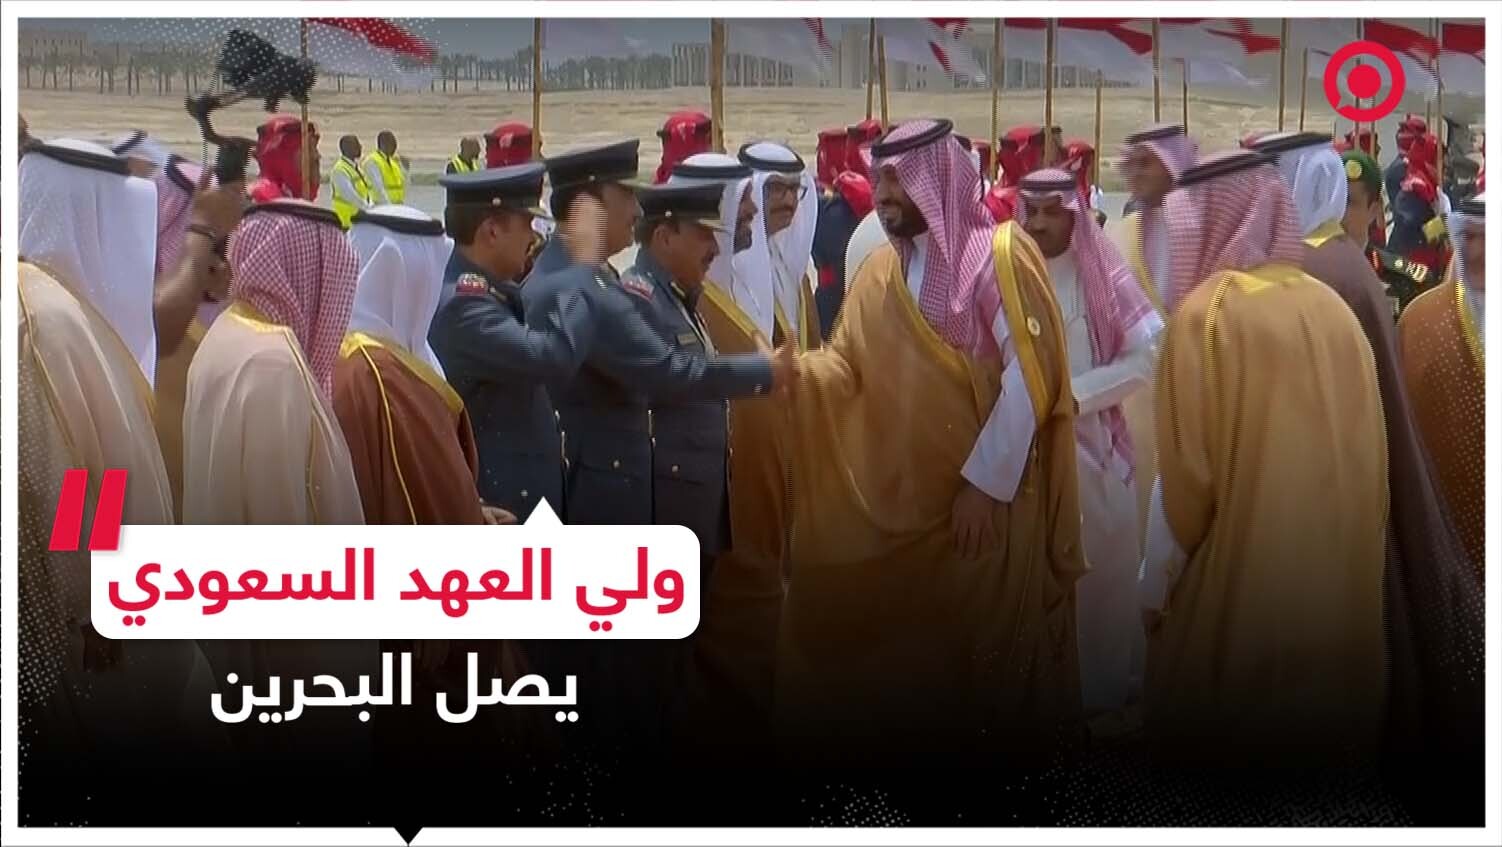 وصول ولي العهد السعودي إلى البحرين للمشاركة في القمة العربية الـ33